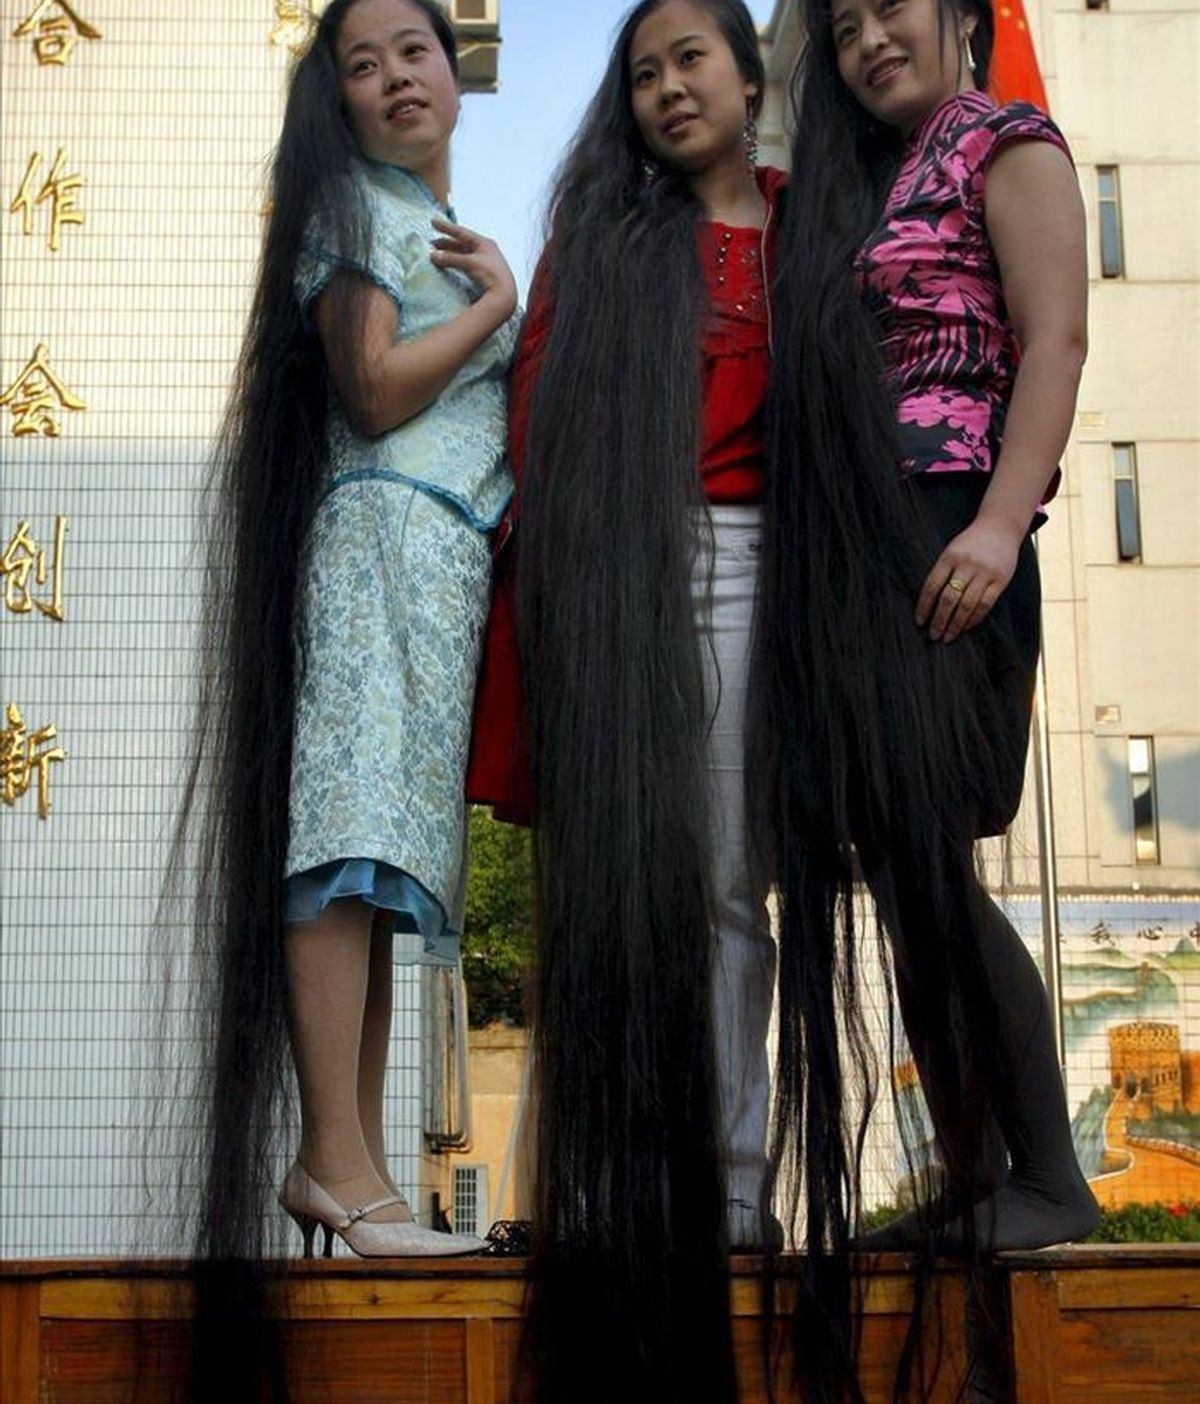 Tres mujeres chinas exhiben su pelo largo en espectáculo en Nanjing (China) el 16 de abril de 2007. Una mujer china que no ha acudido a un peluquero desde hace más de dos décadas anunció a la prensa local que se va a cortar su melena, que mide 3,6 metros, y elaborar con ella un bordado de recuerdo. EFE/Archivo